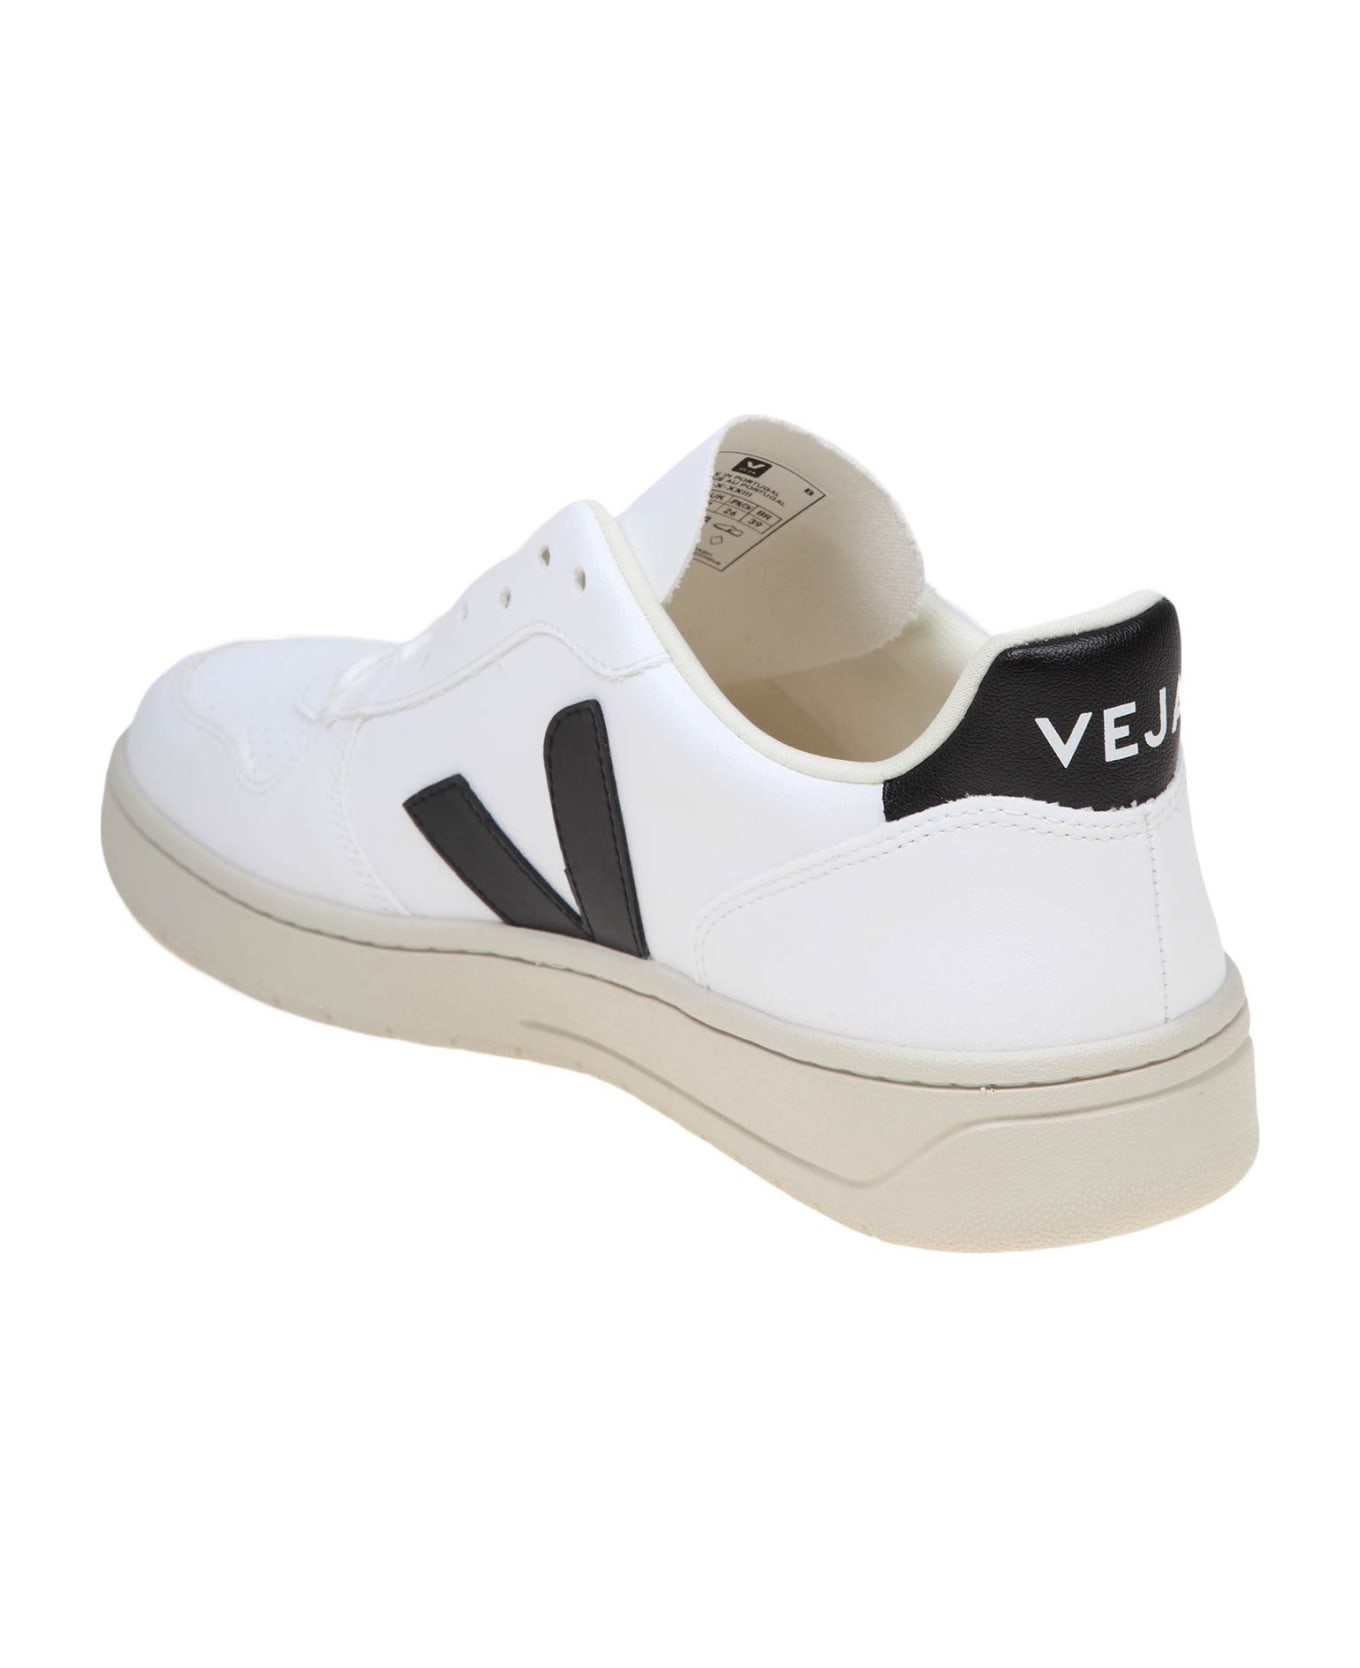 Veja V 90 Sneakers In Black And White Leather - White/Black